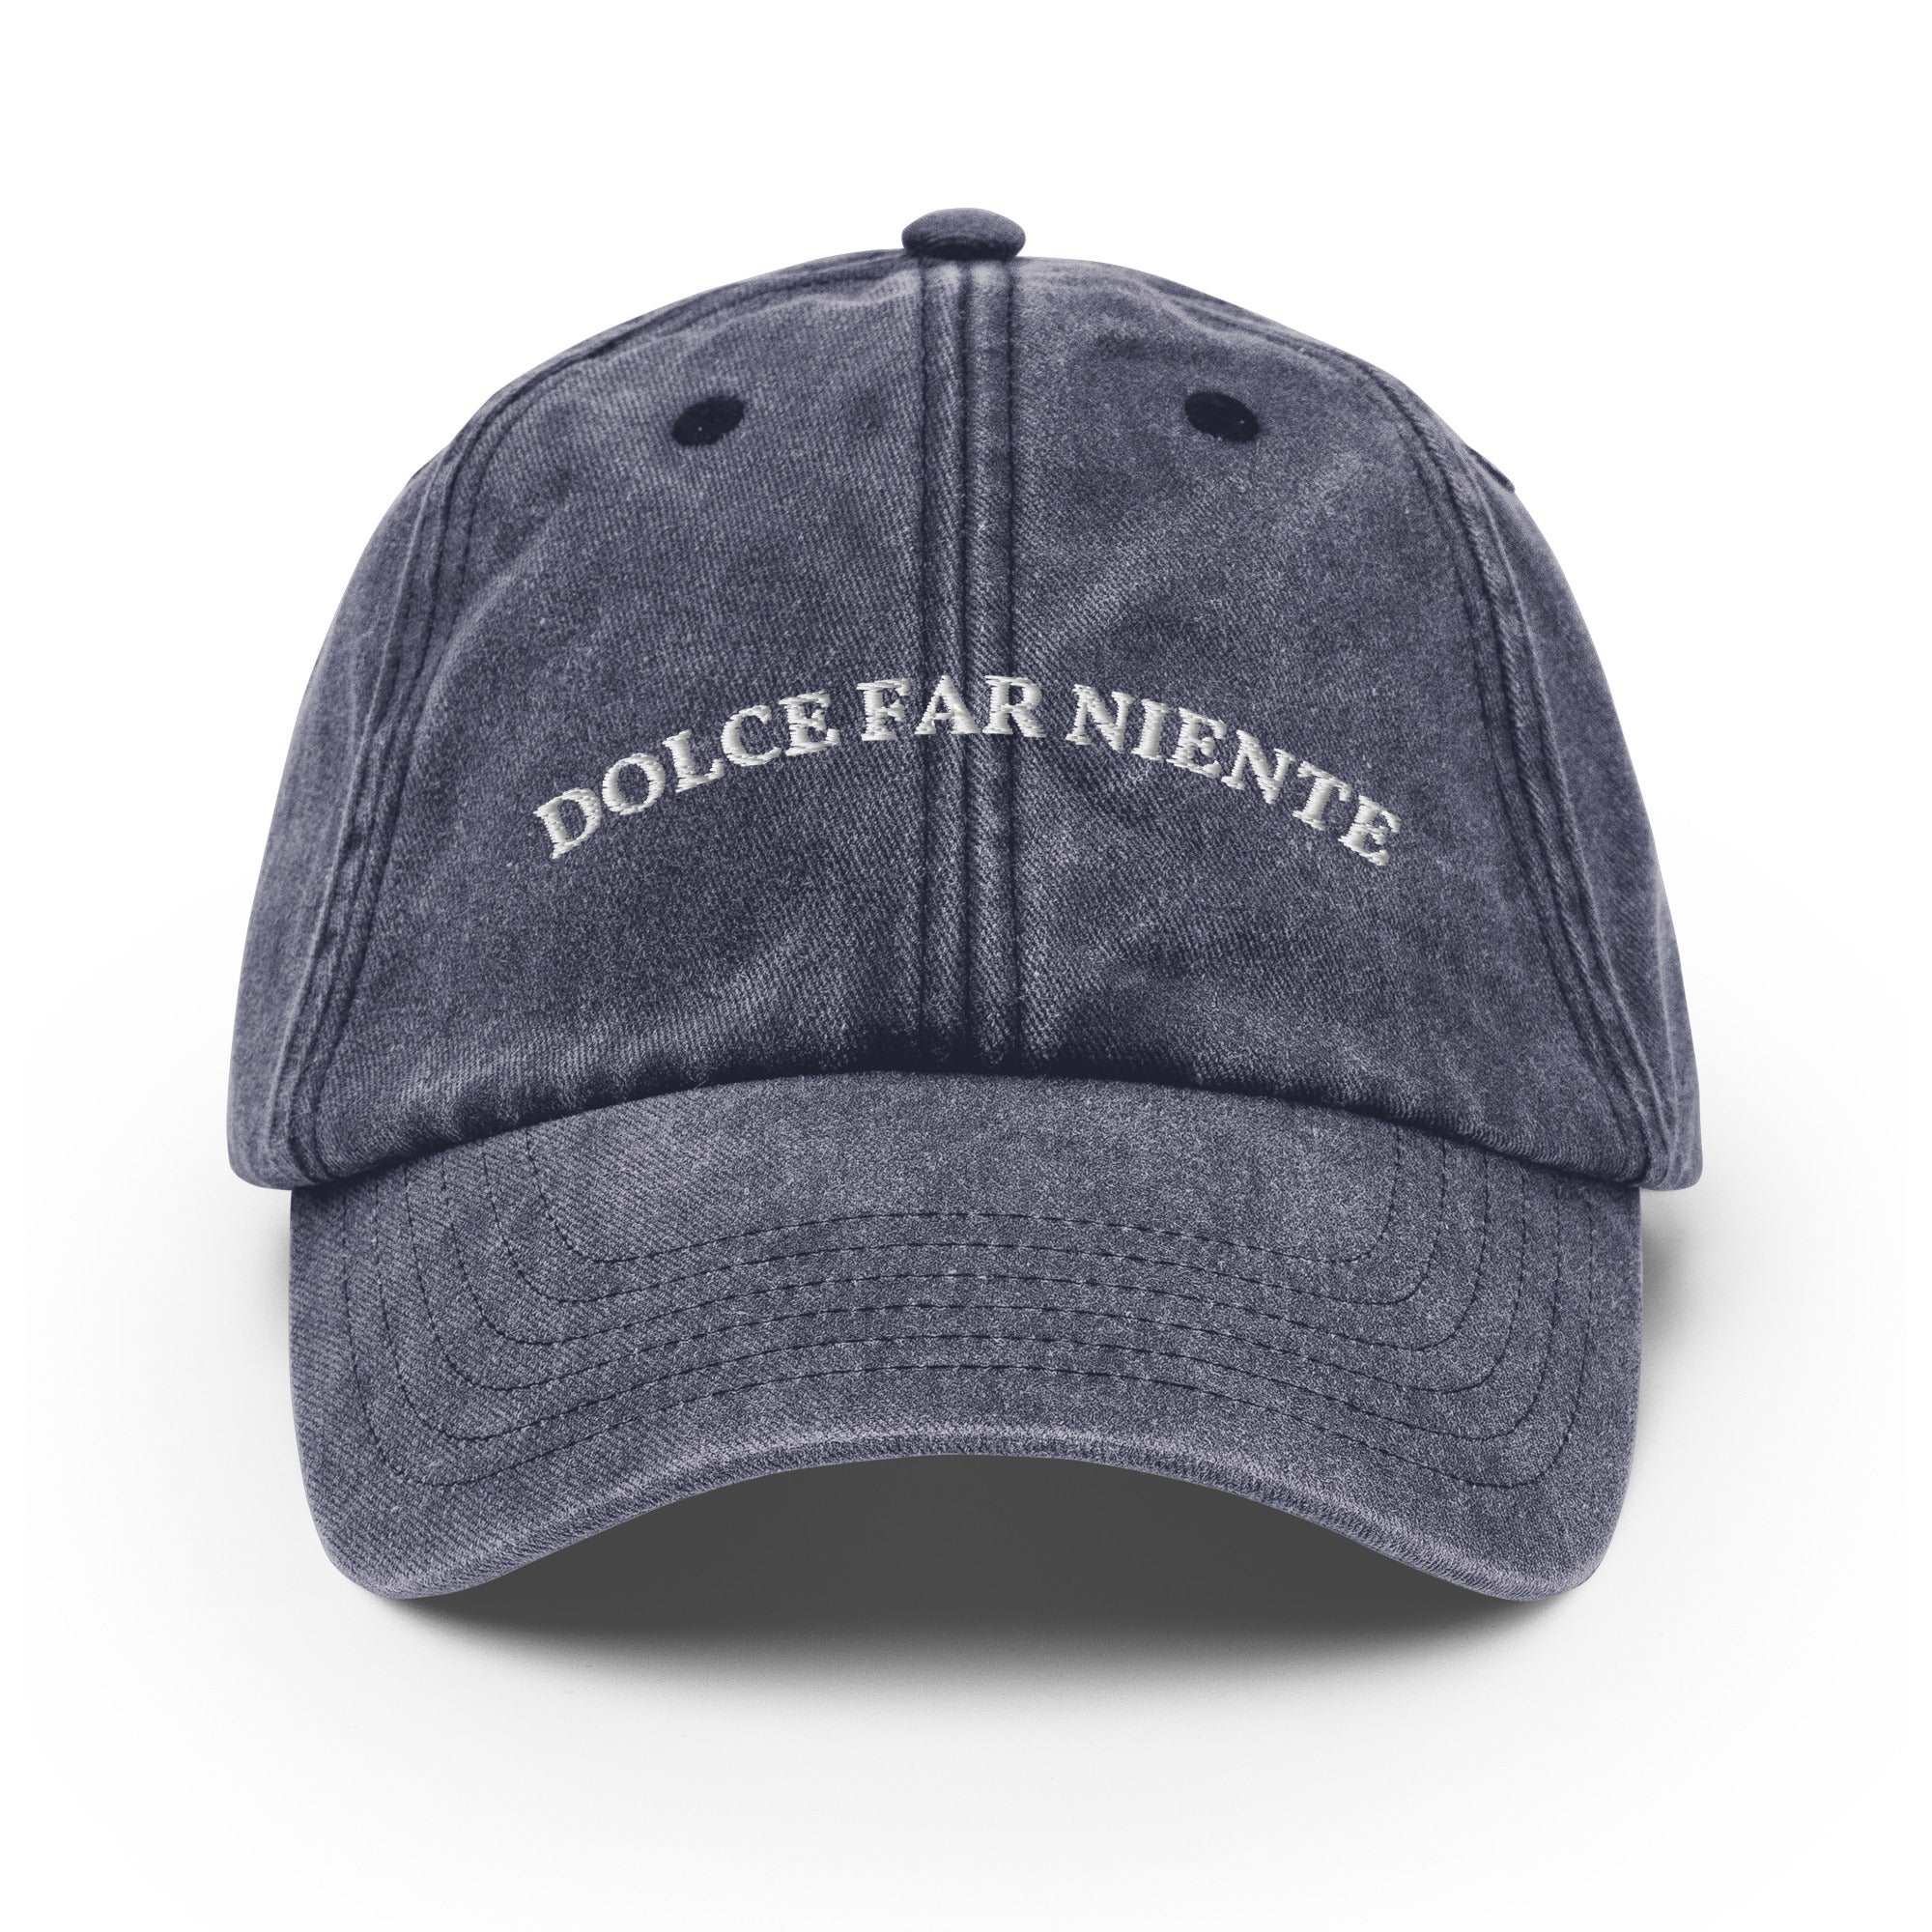 Dolce Far Niente Vintage Cap - The Refined Spirit